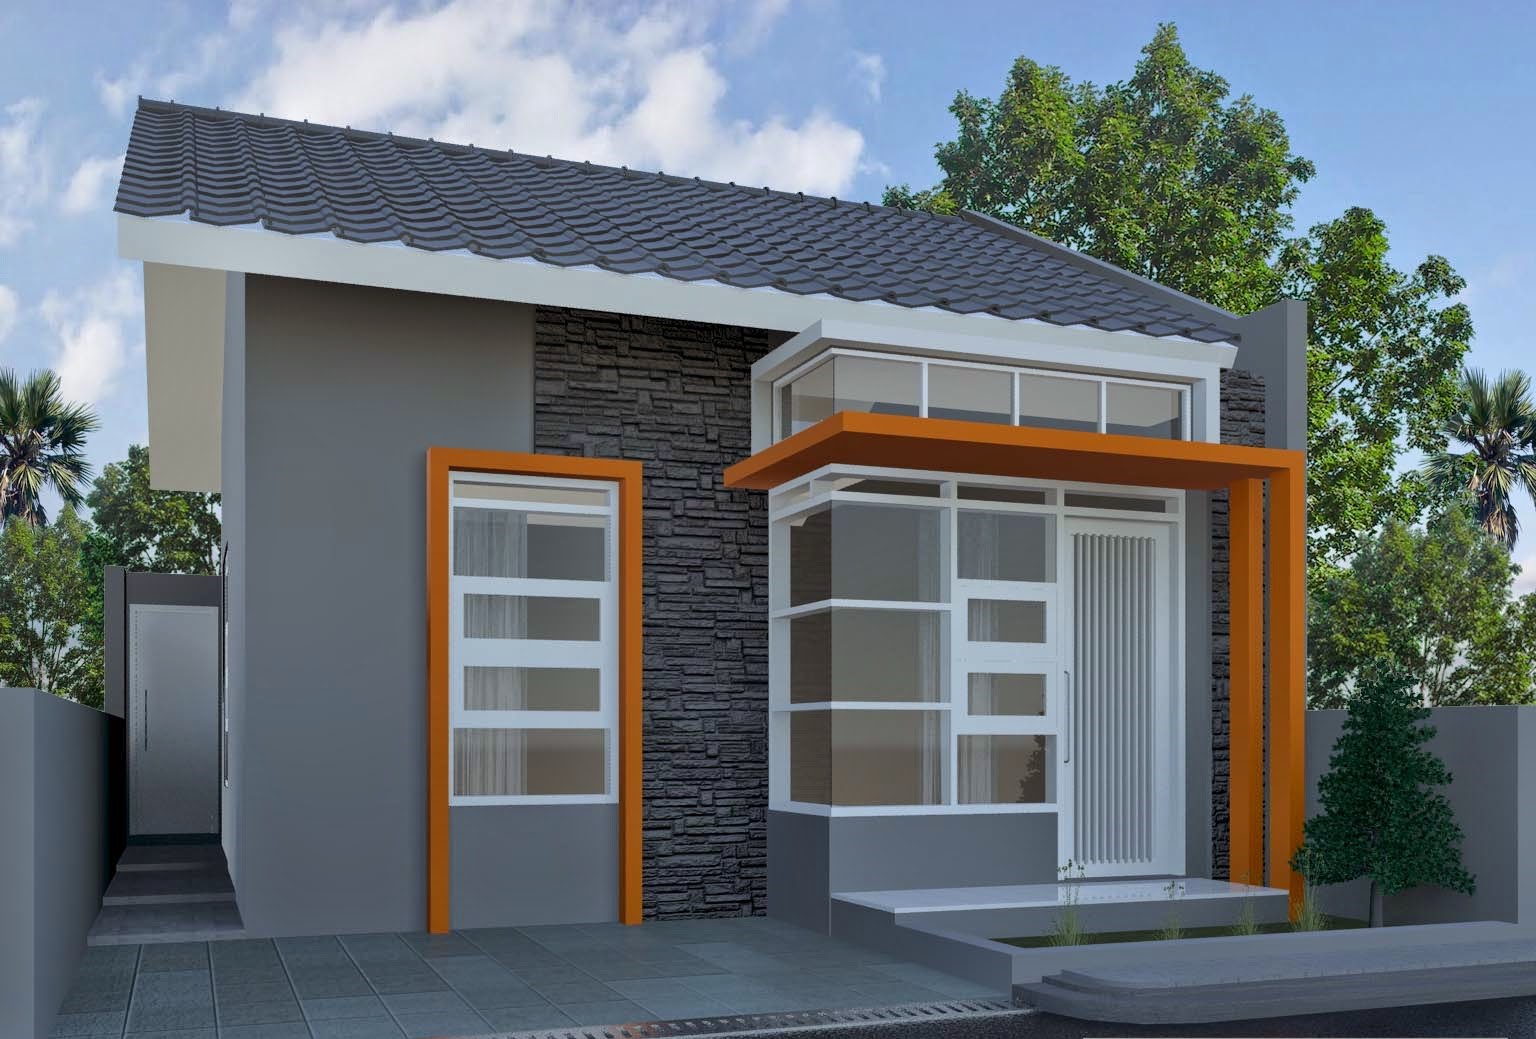 21 Model Rumah Sederhana Tapi Kelihatan Mewah Terbaru 2018 Dekor Rumah